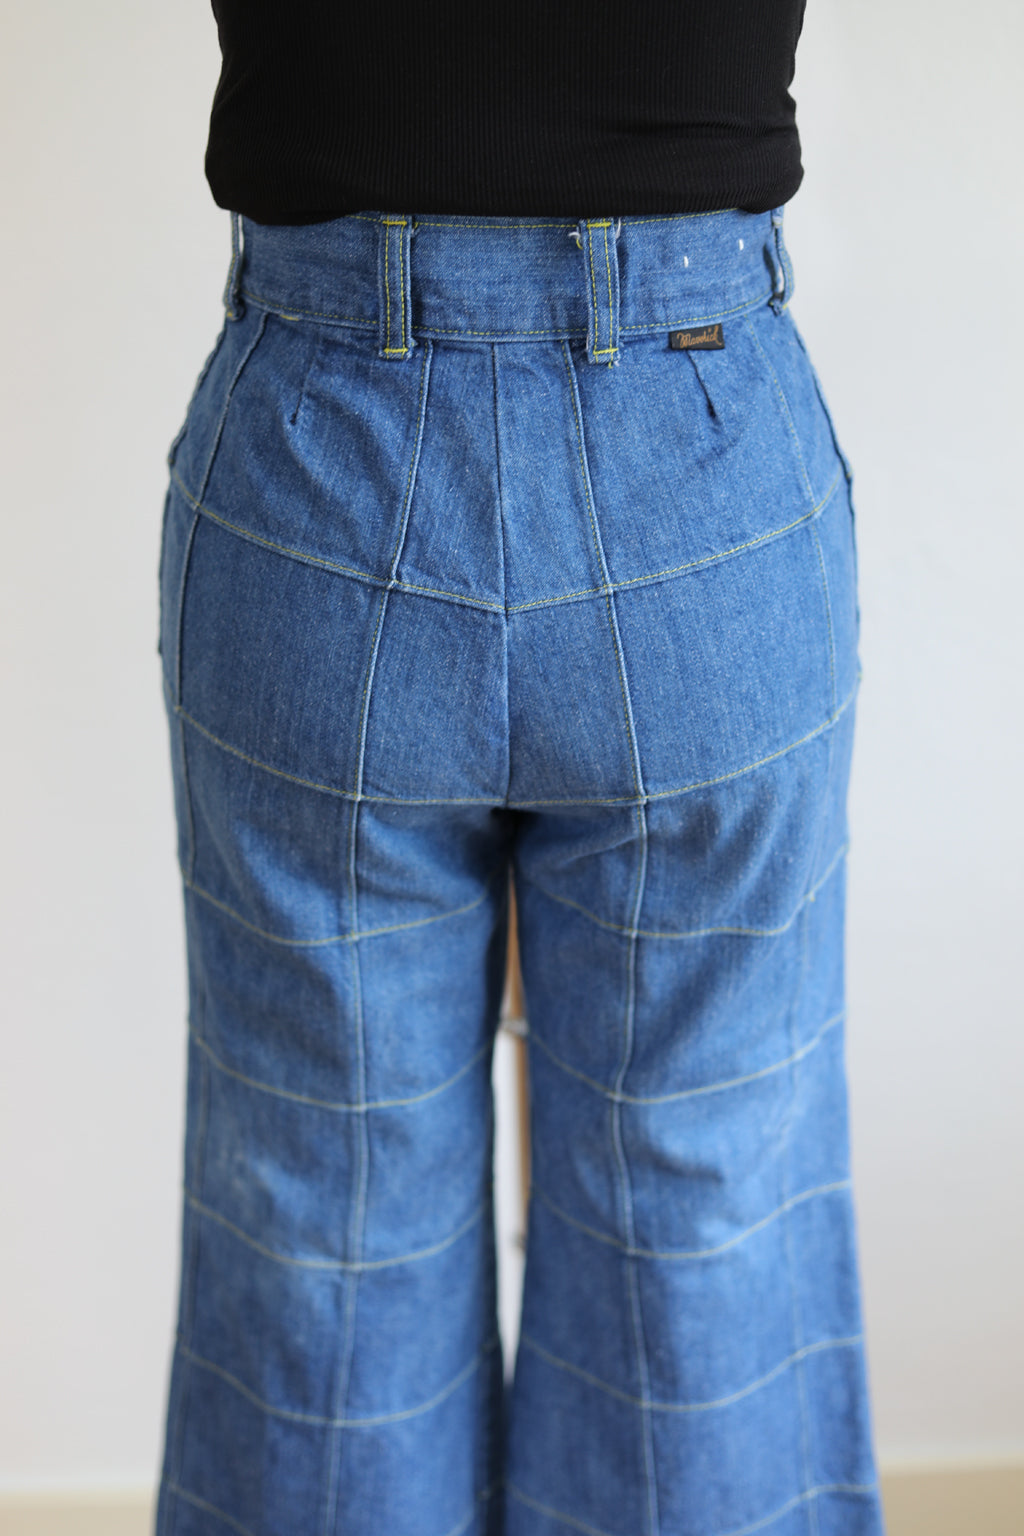 Vintage 1970s Medium Wash Denim Flares Jeans - MAVERICK Patchwork Grid Motif Bell Bottoms W26"